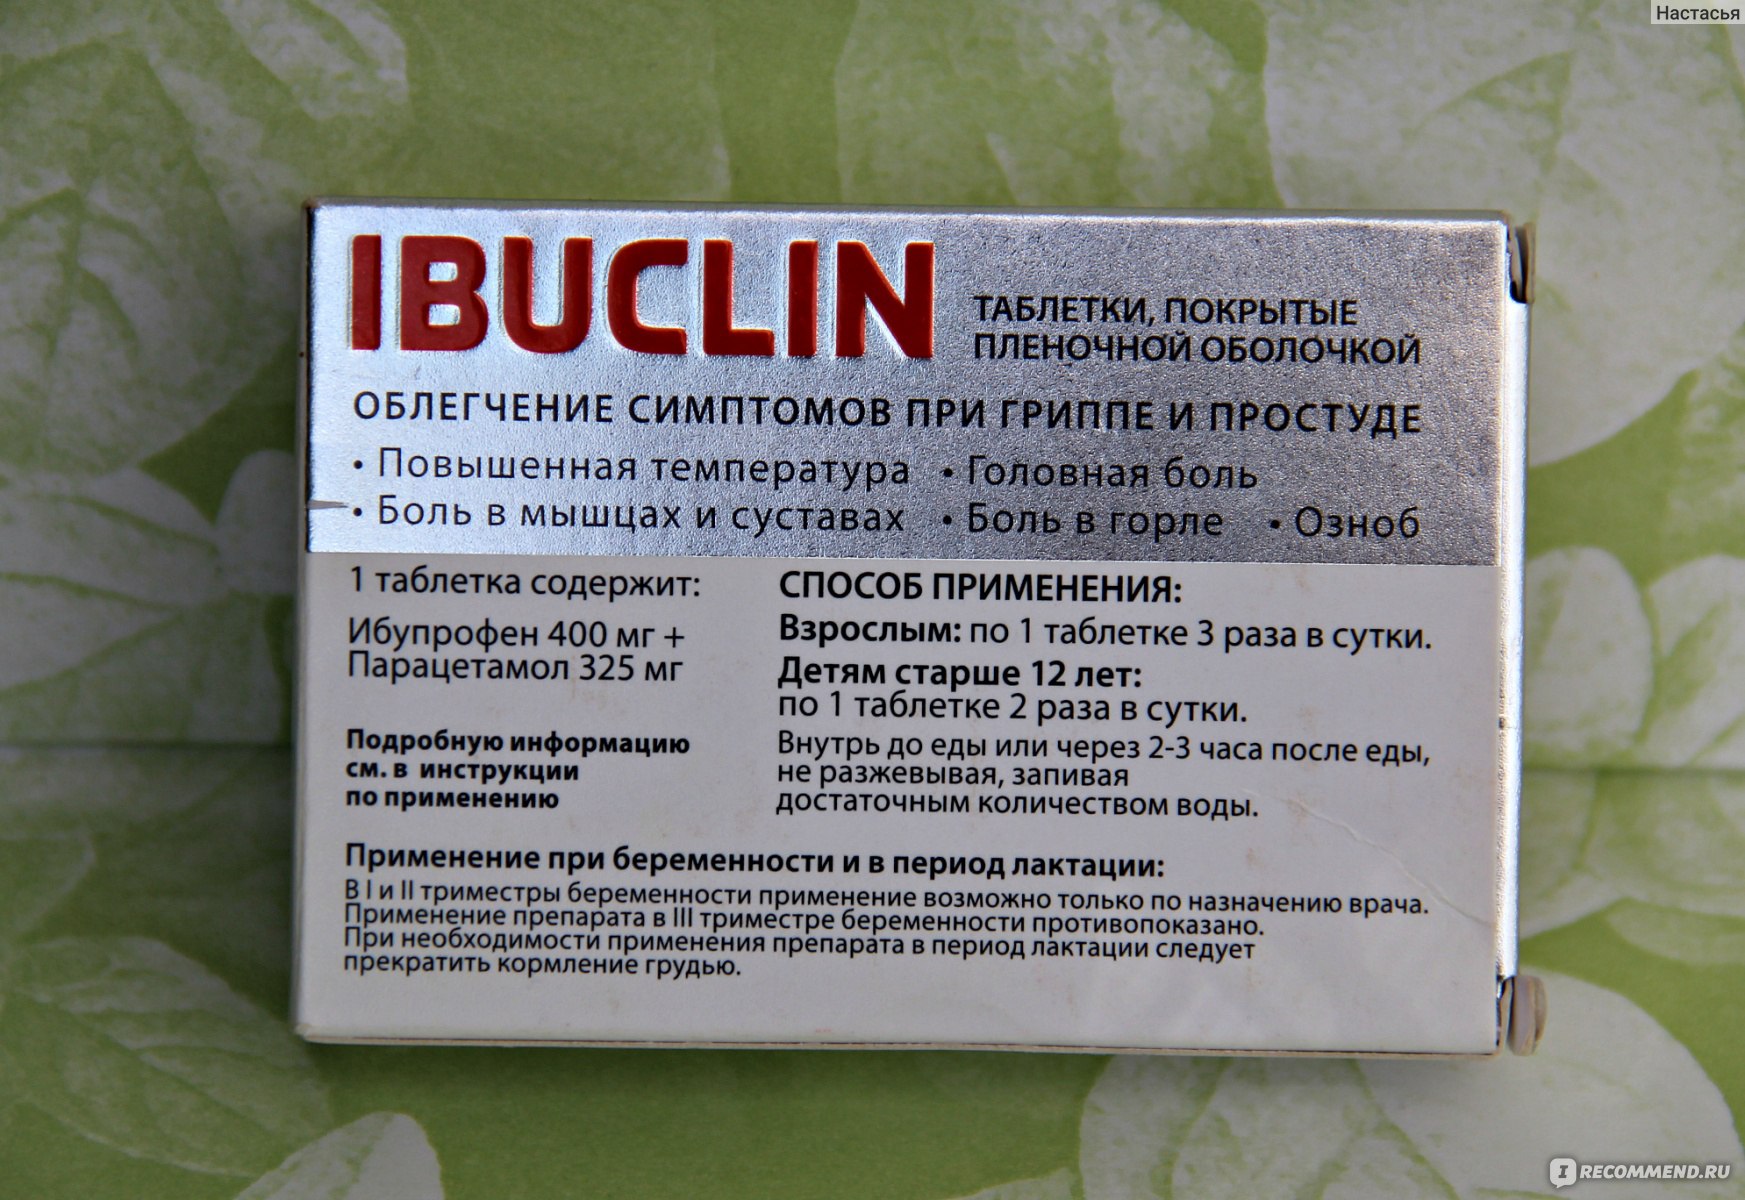 Сколько раз можно пить ибуклин в день. Ибуклин парацетамол препараты. Таблетки ибуклин показания.